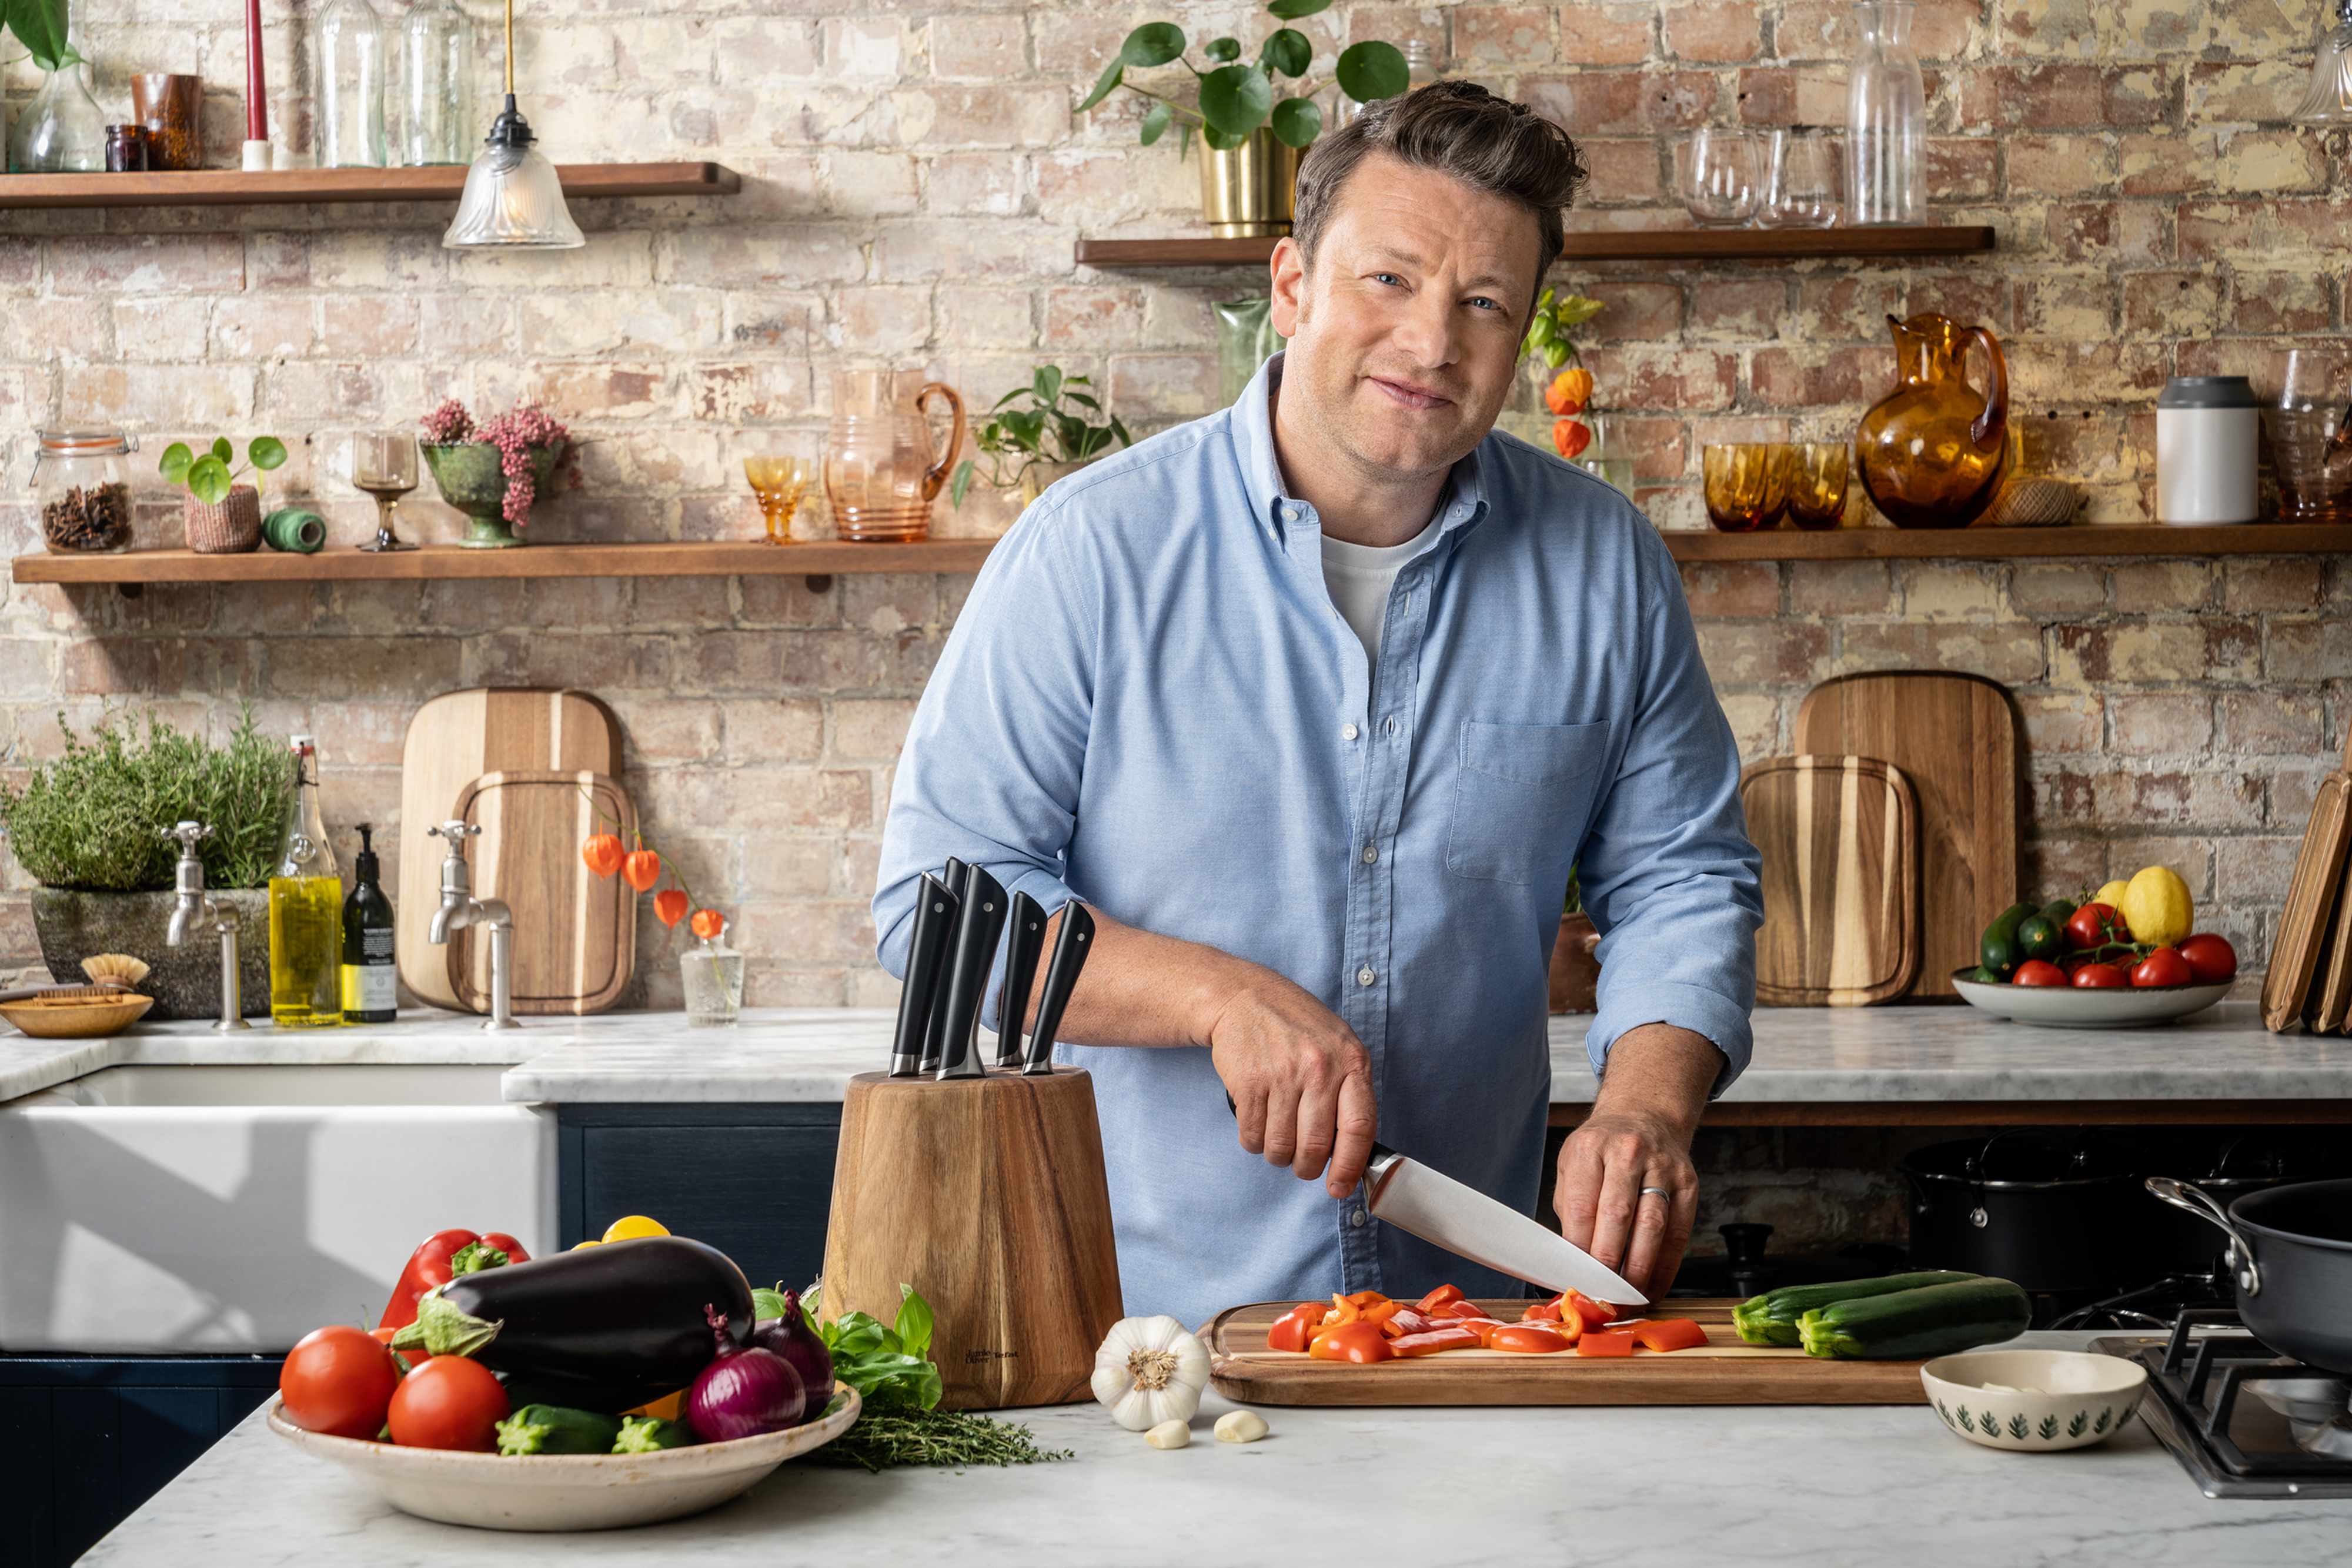 Jamie Oliver Carving Knife, 20 cm - Tefal @ RoyalDesign